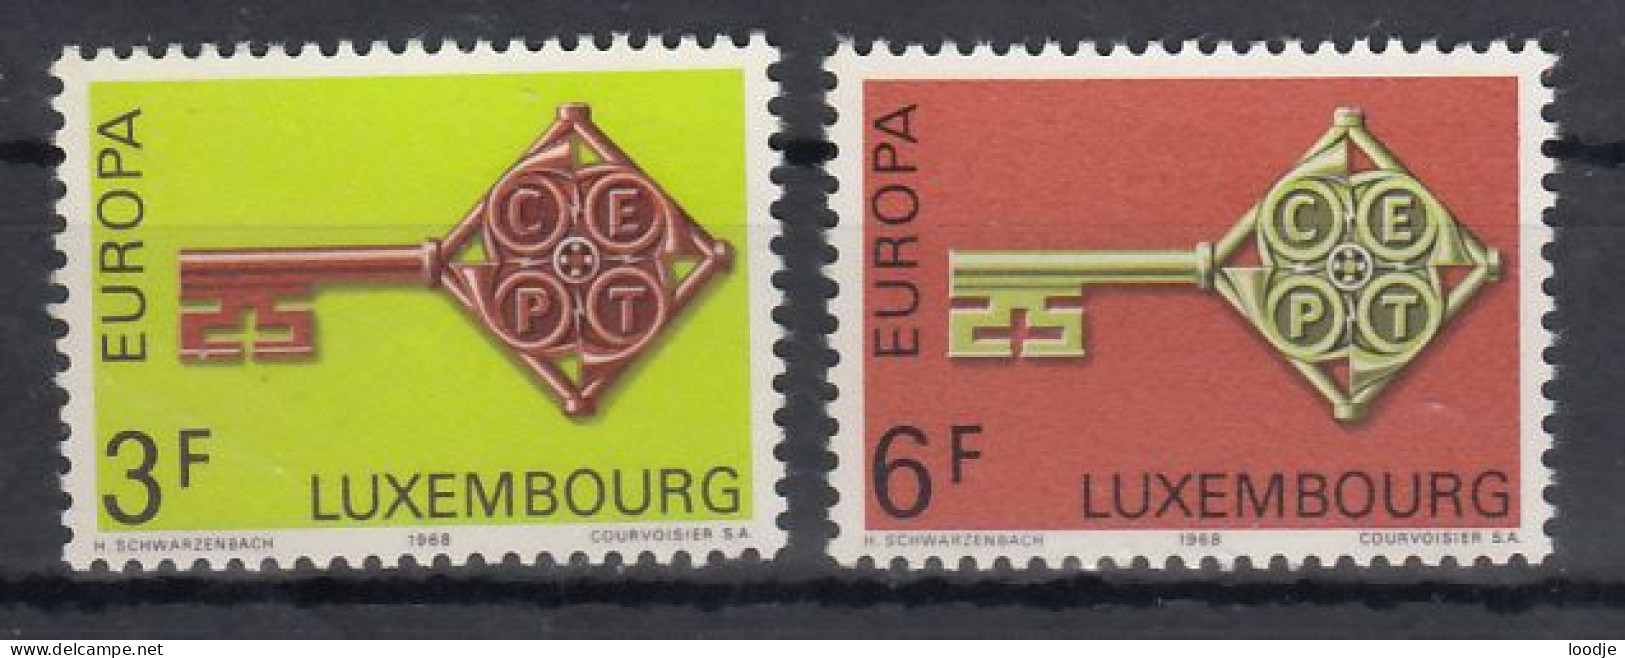 Luxemburg  Europa Cept 1968 Postfris - 1968